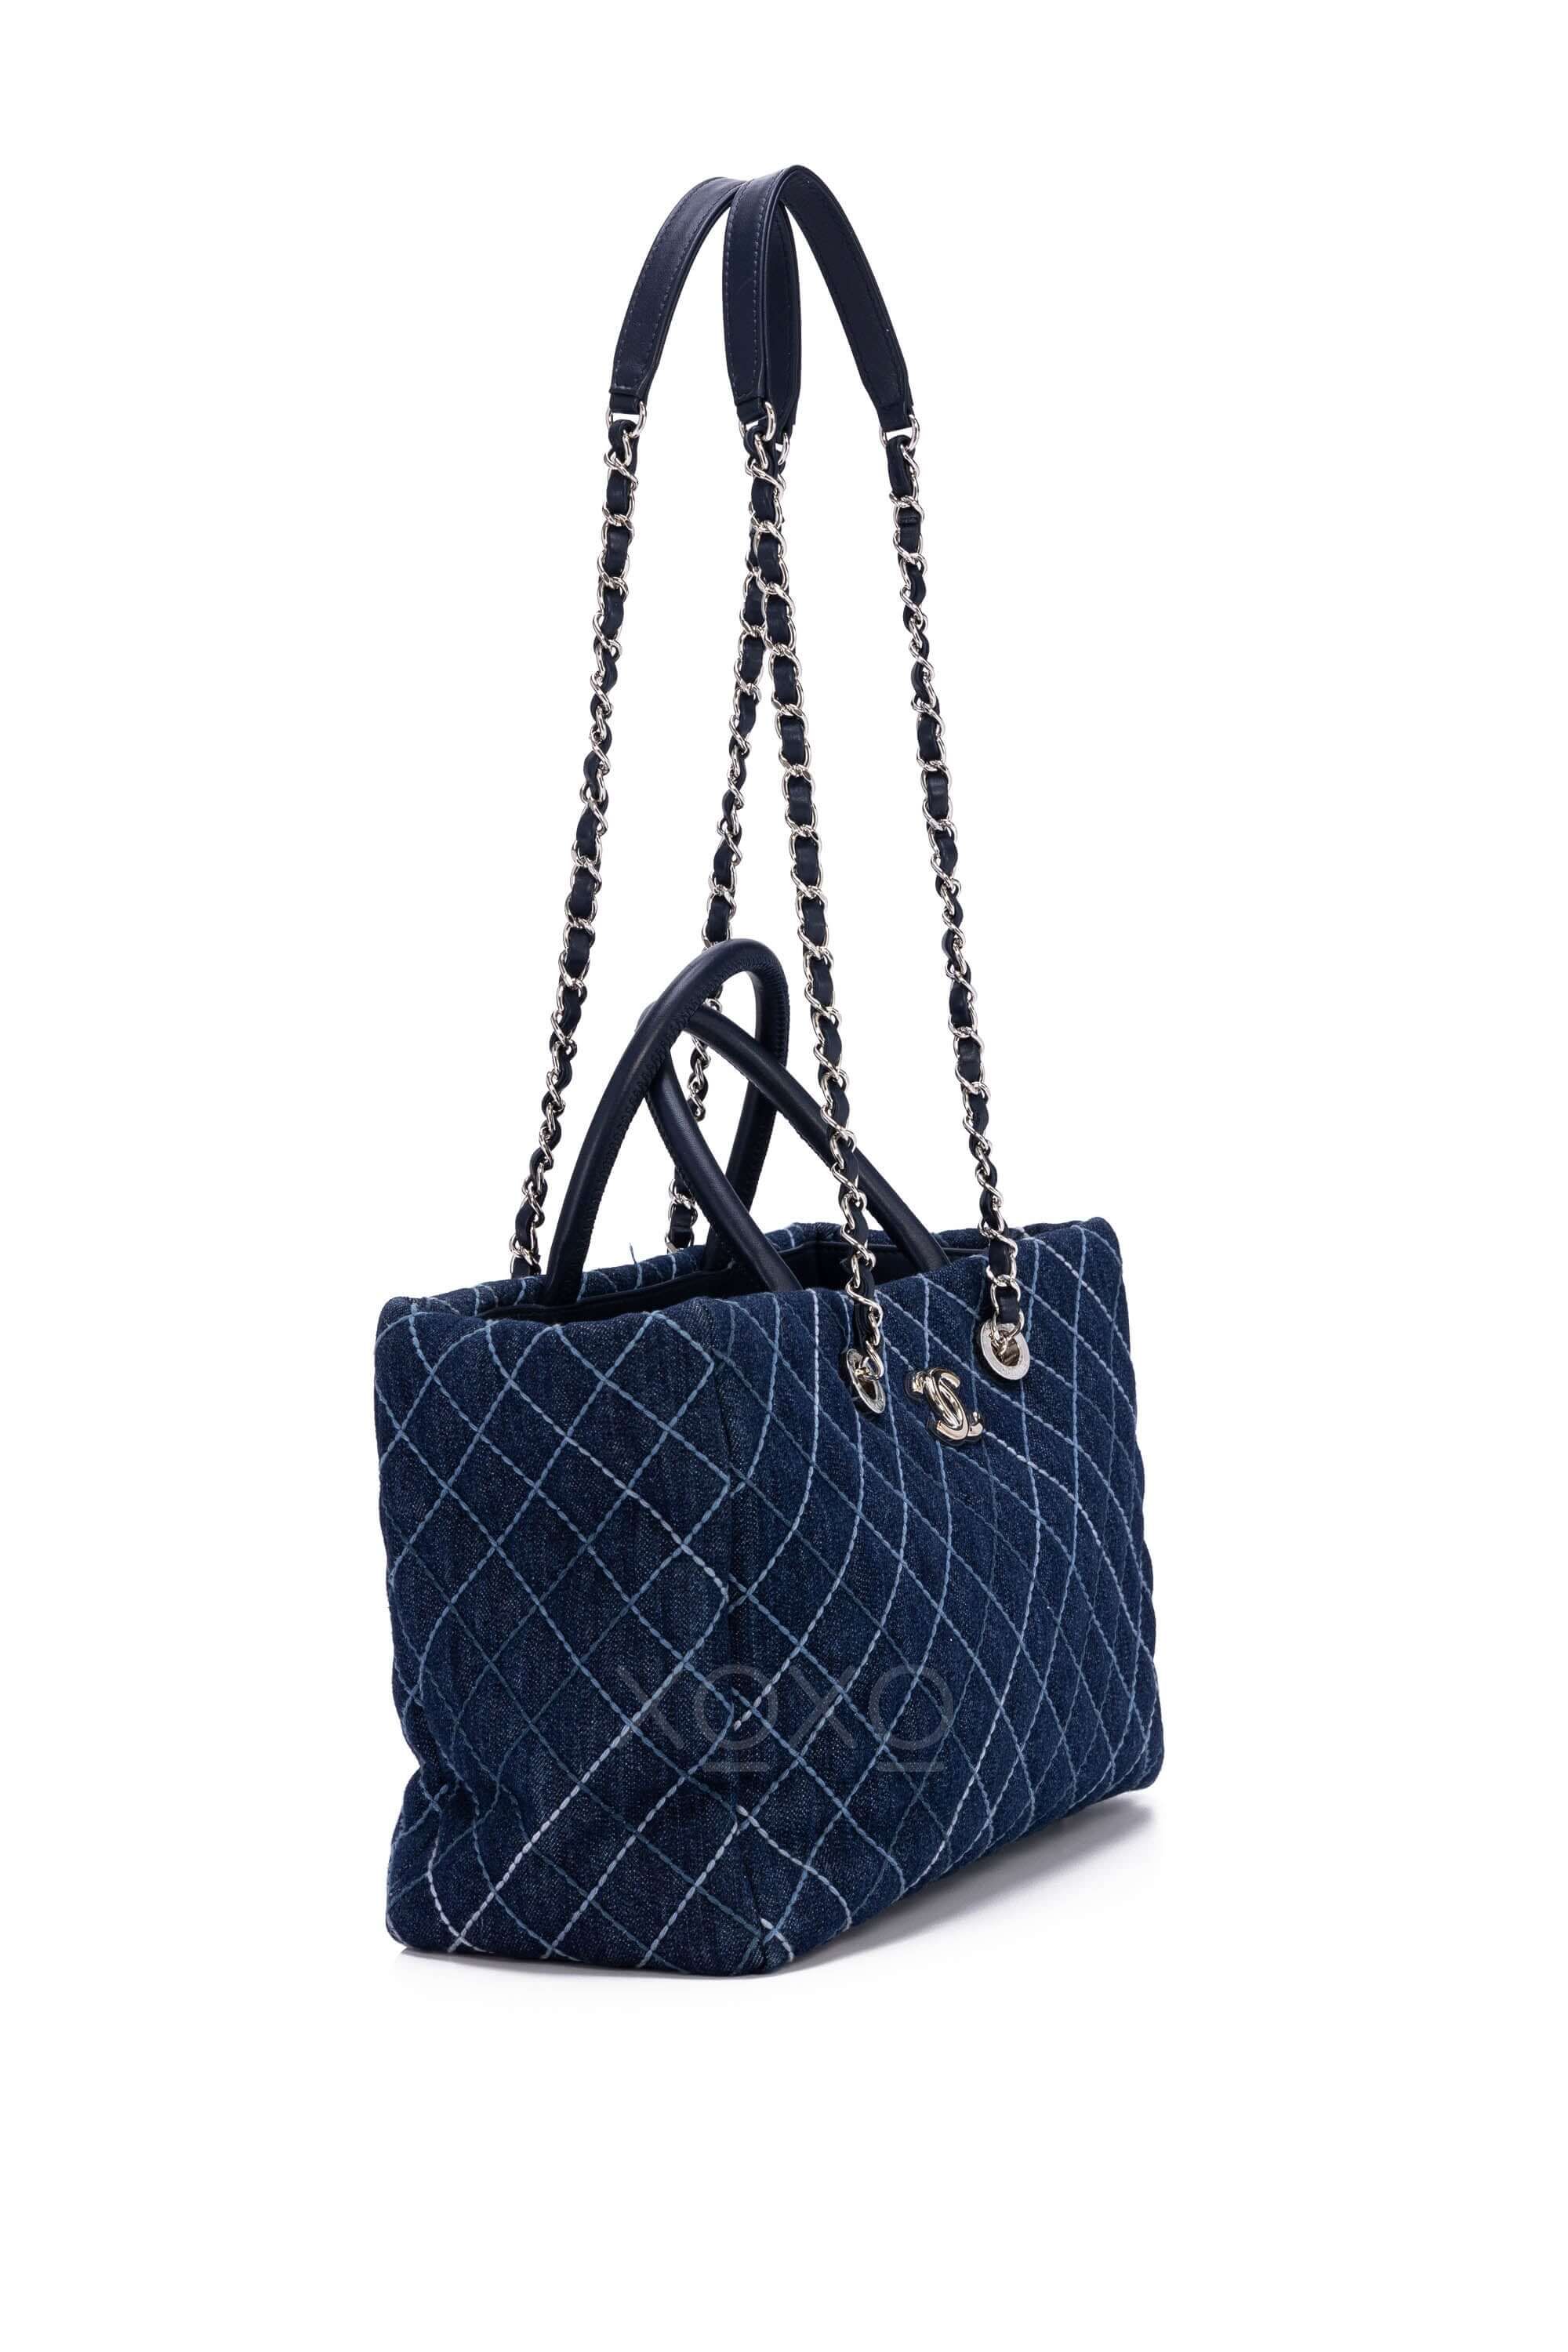 Chanel Coco Allure Tote Bag Denim Blue oxluxe